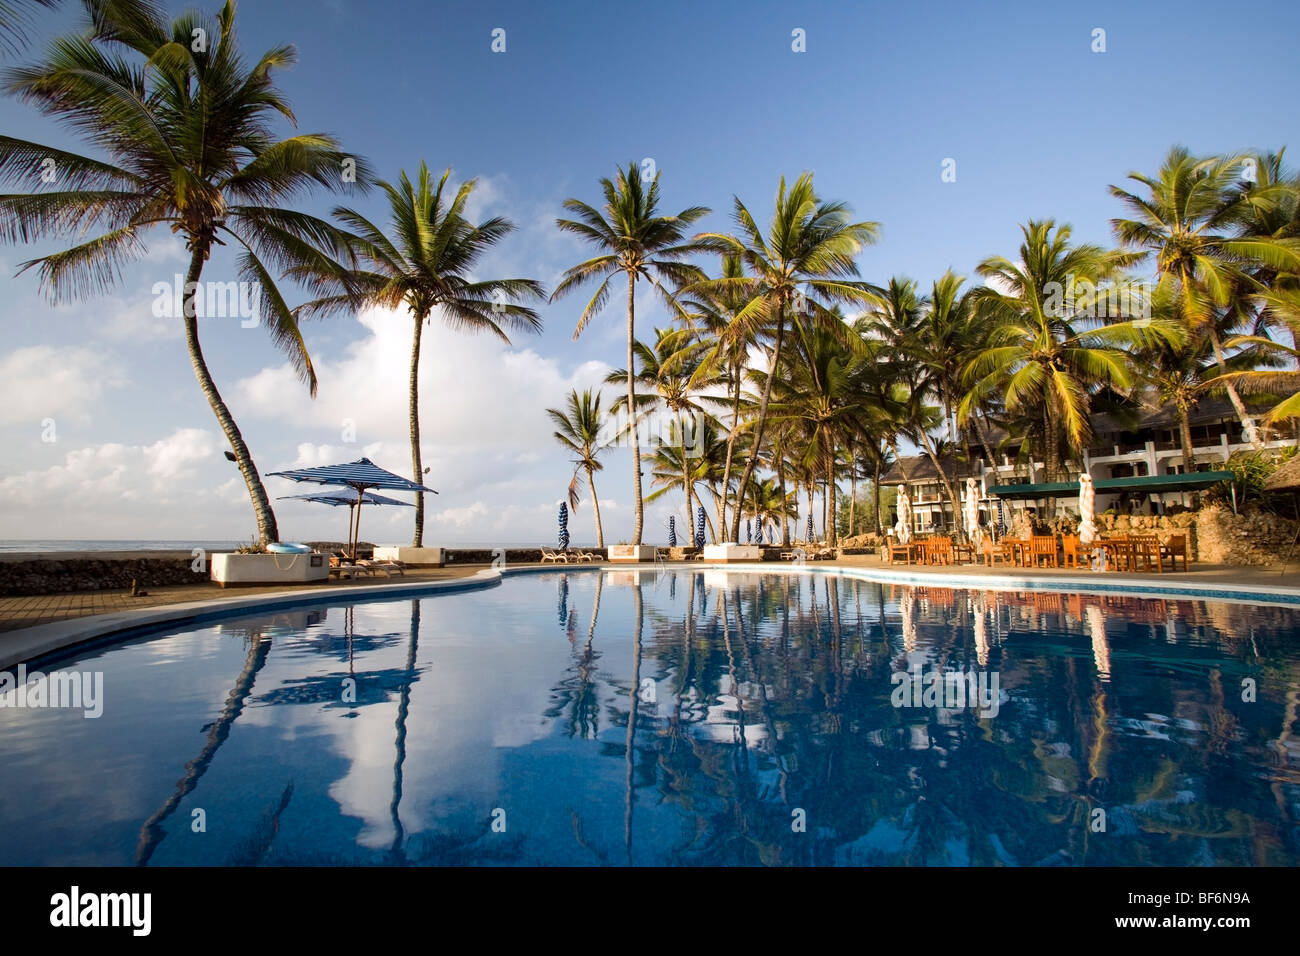 Pool area at Hemingways Resort - Watamu, Kenya Stock Photo